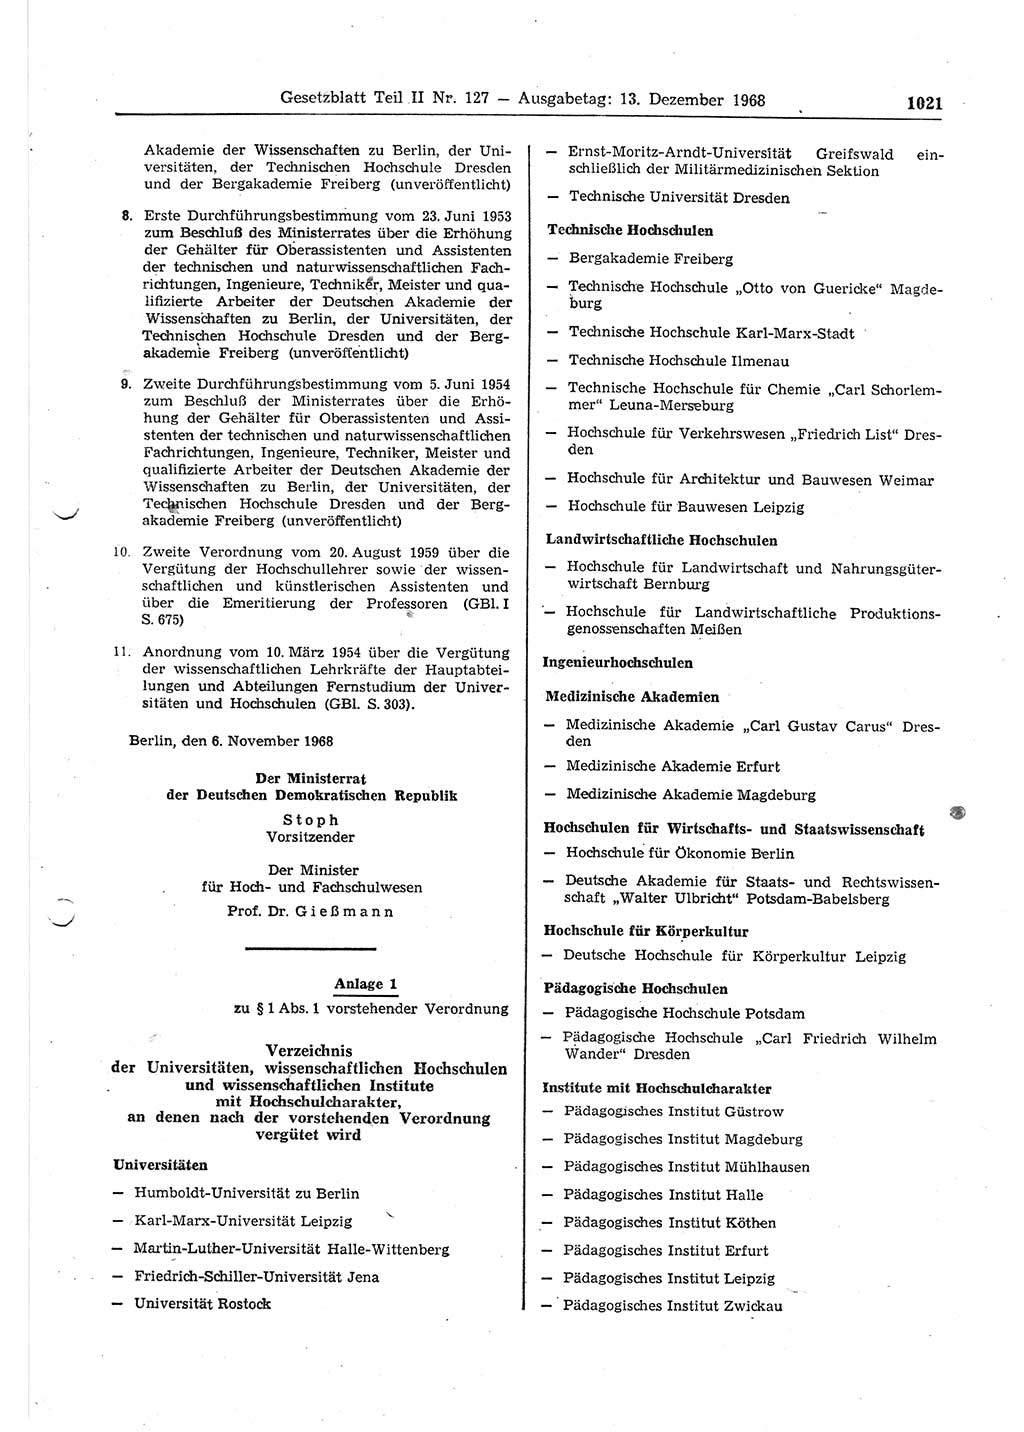 Gesetzblatt (GBl.) der Deutschen Demokratischen Republik (DDR) Teil ⅠⅠ 1968, Seite 1021 (GBl. DDR ⅠⅠ 1968, S. 1021)